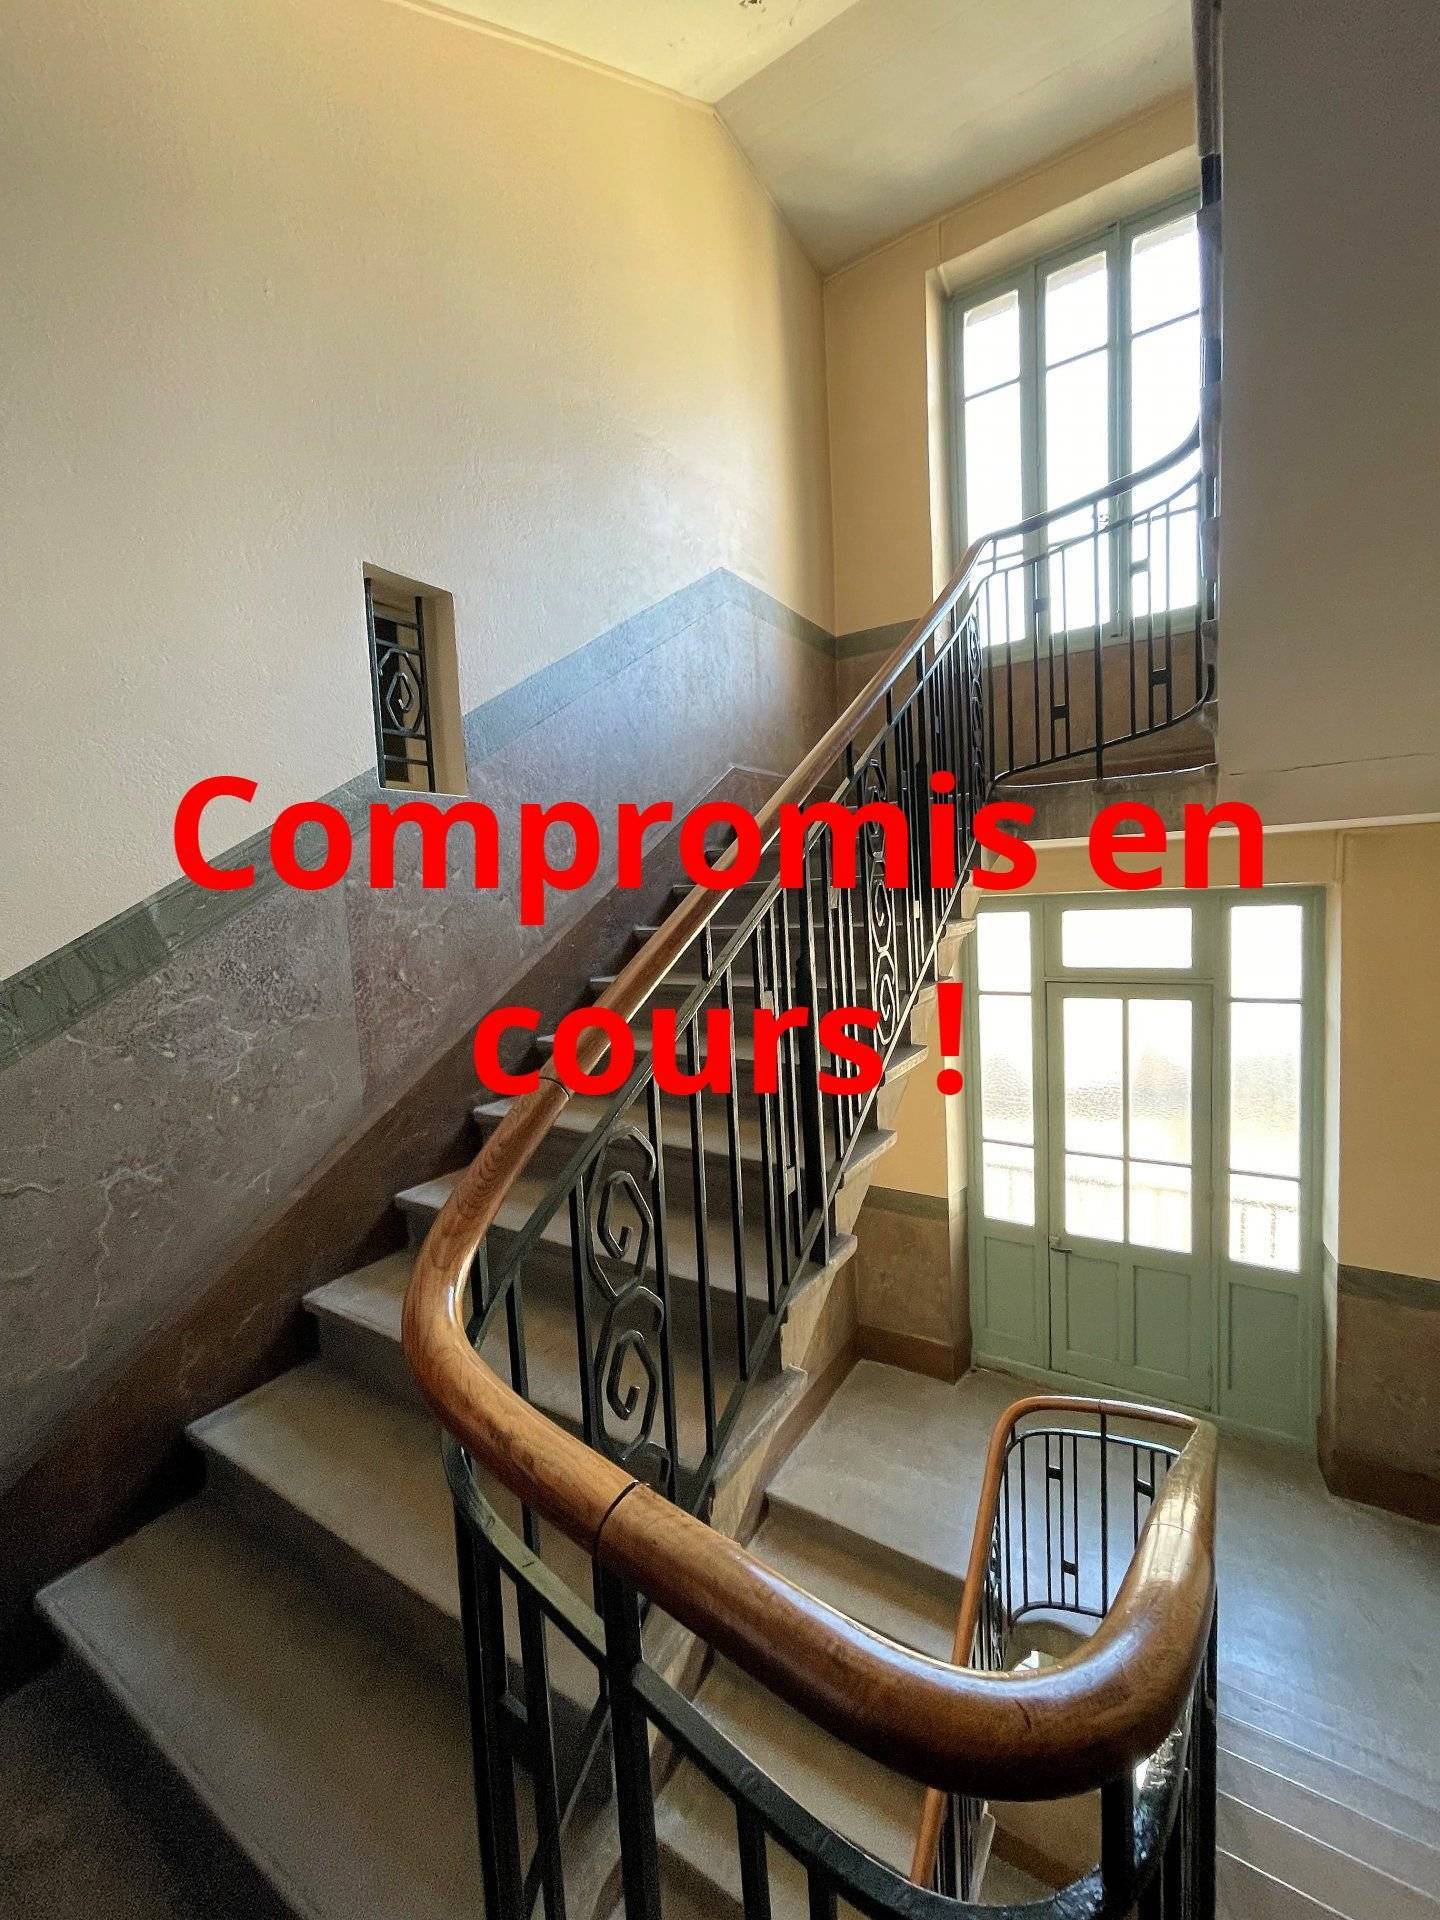 Le bel escalier ancien de la copropriété